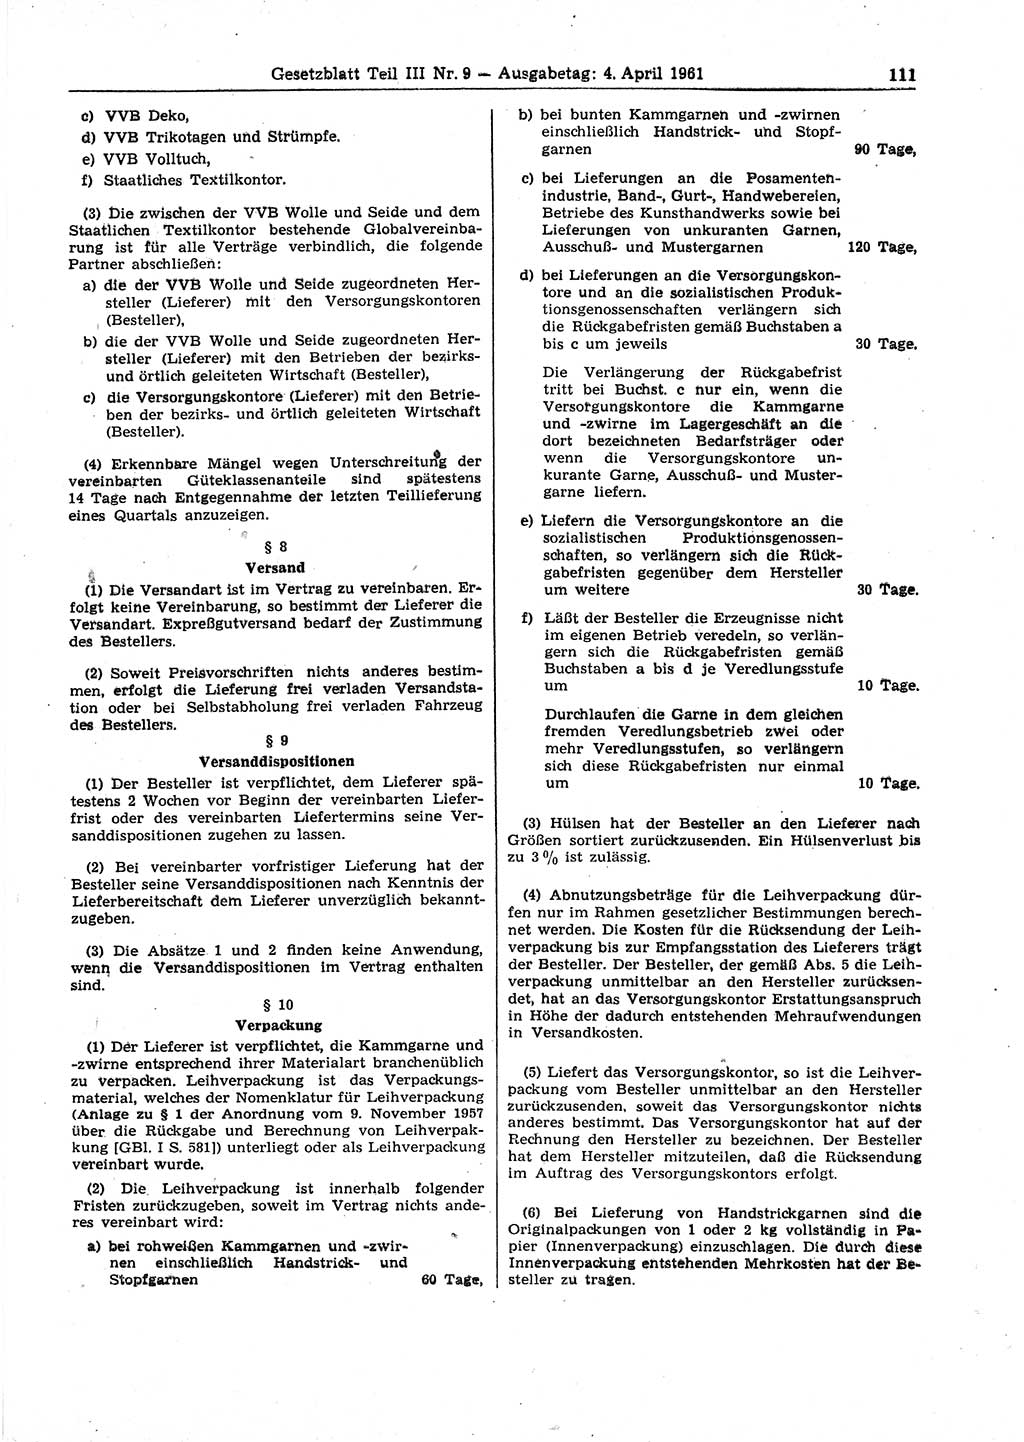 Gesetzblatt (GBl.) der Deutschen Demokratischen Republik (DDR) Teil ⅠⅠⅠ 1961, Seite 111 (GBl. DDR ⅠⅠⅠ 1961, S. 111)